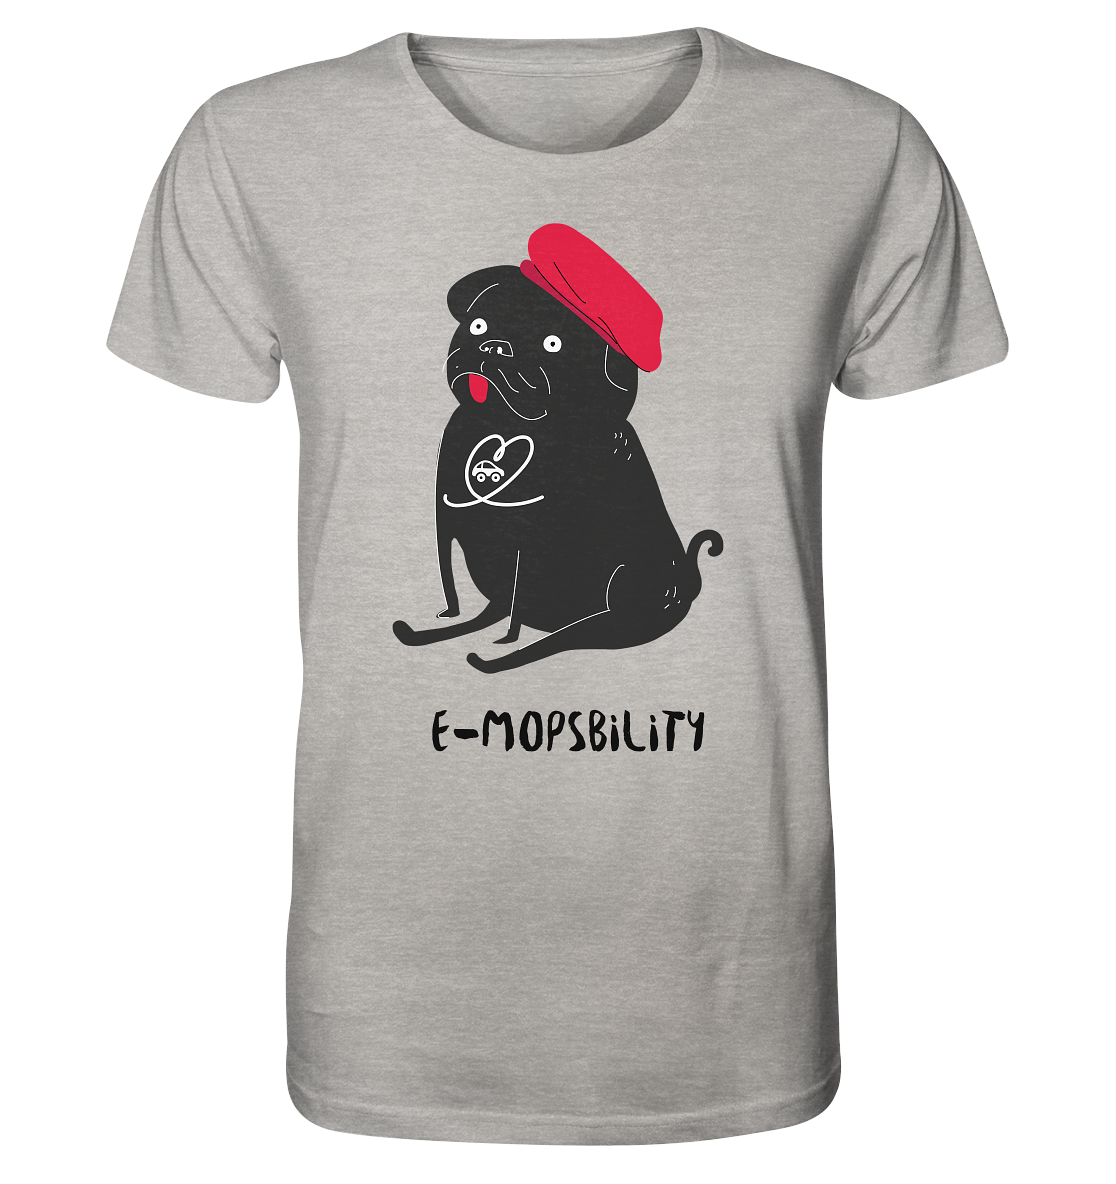 E-Mopsbility ORGANIC - Organic Shirt (meliert)